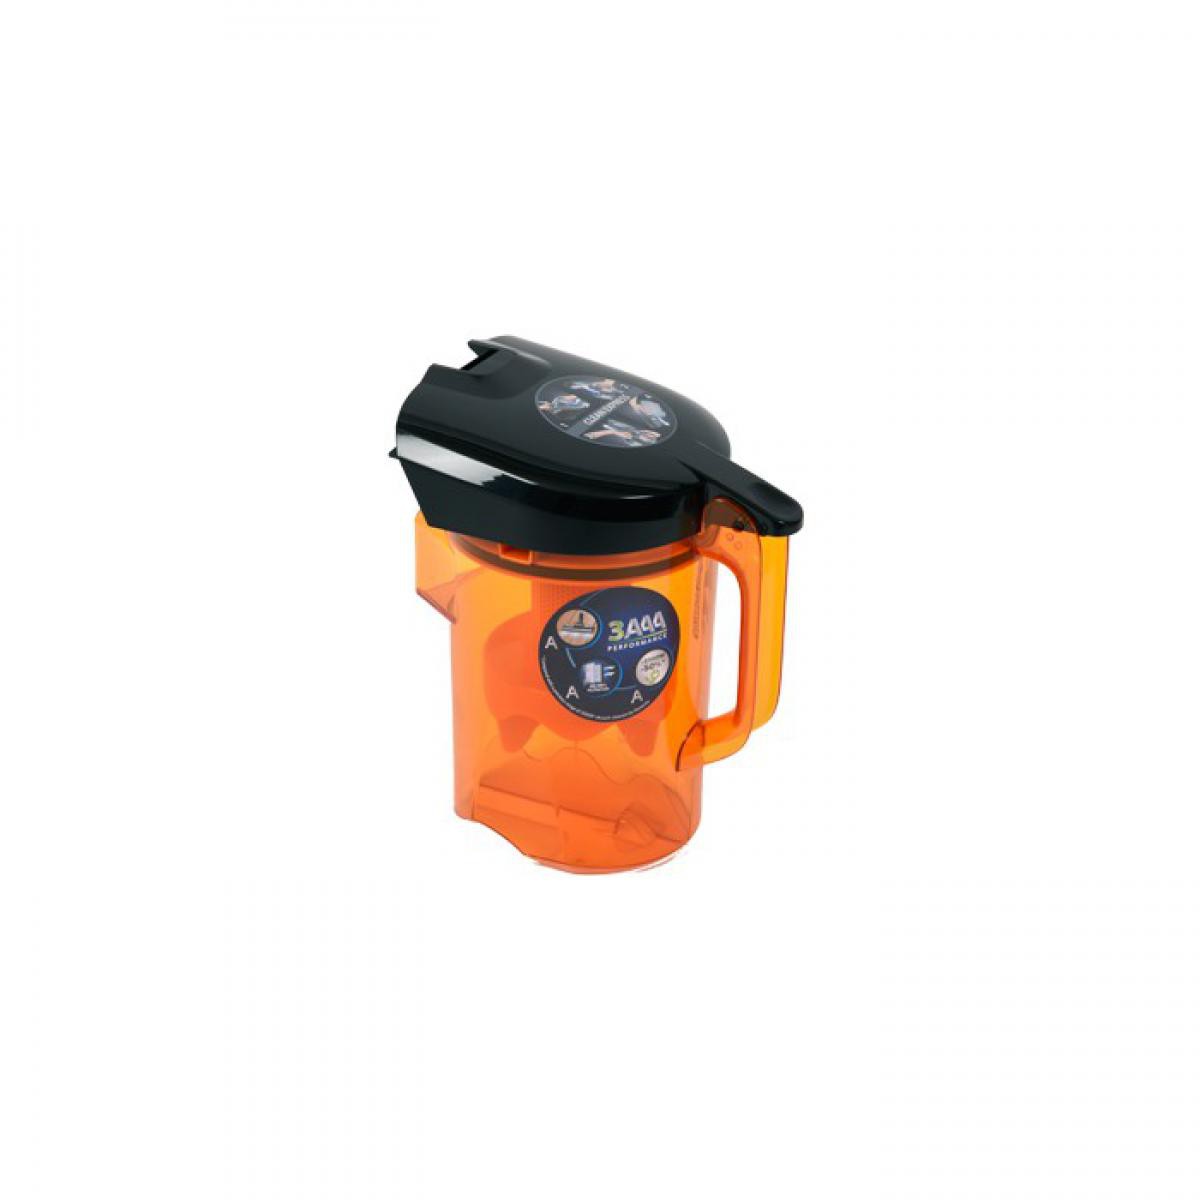 Rowenta - Bac à poussière orange pour aspirateur compact power cyclonic rowenta - Accessoire entretien des sols